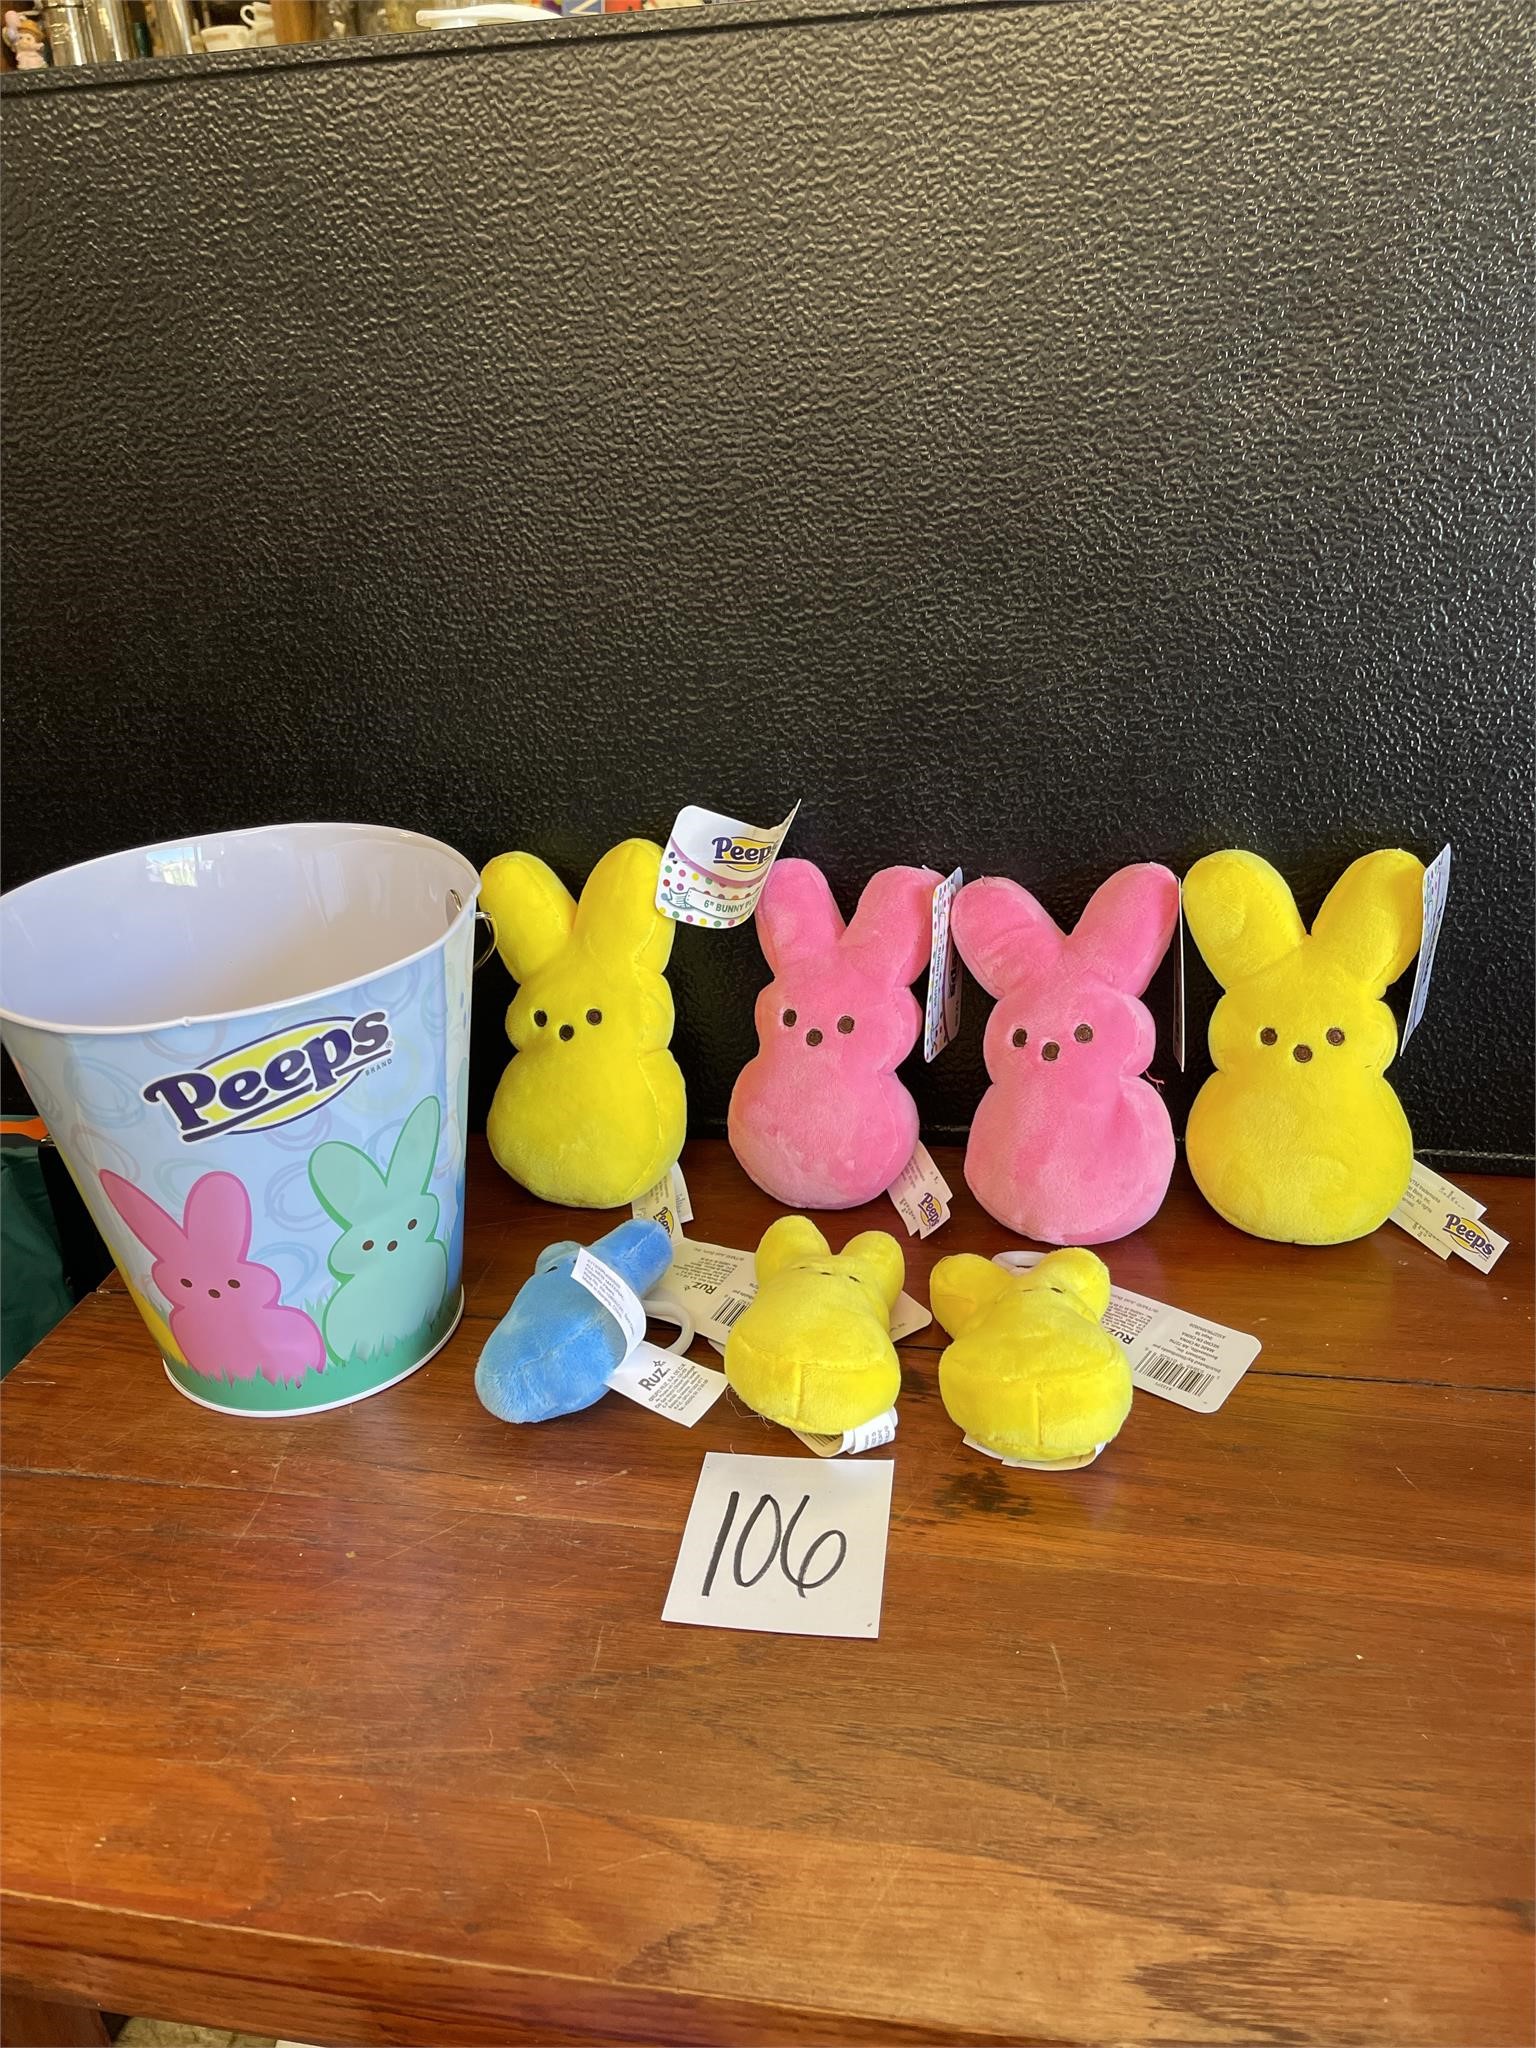 new 6" bunny peeps plush and bucket